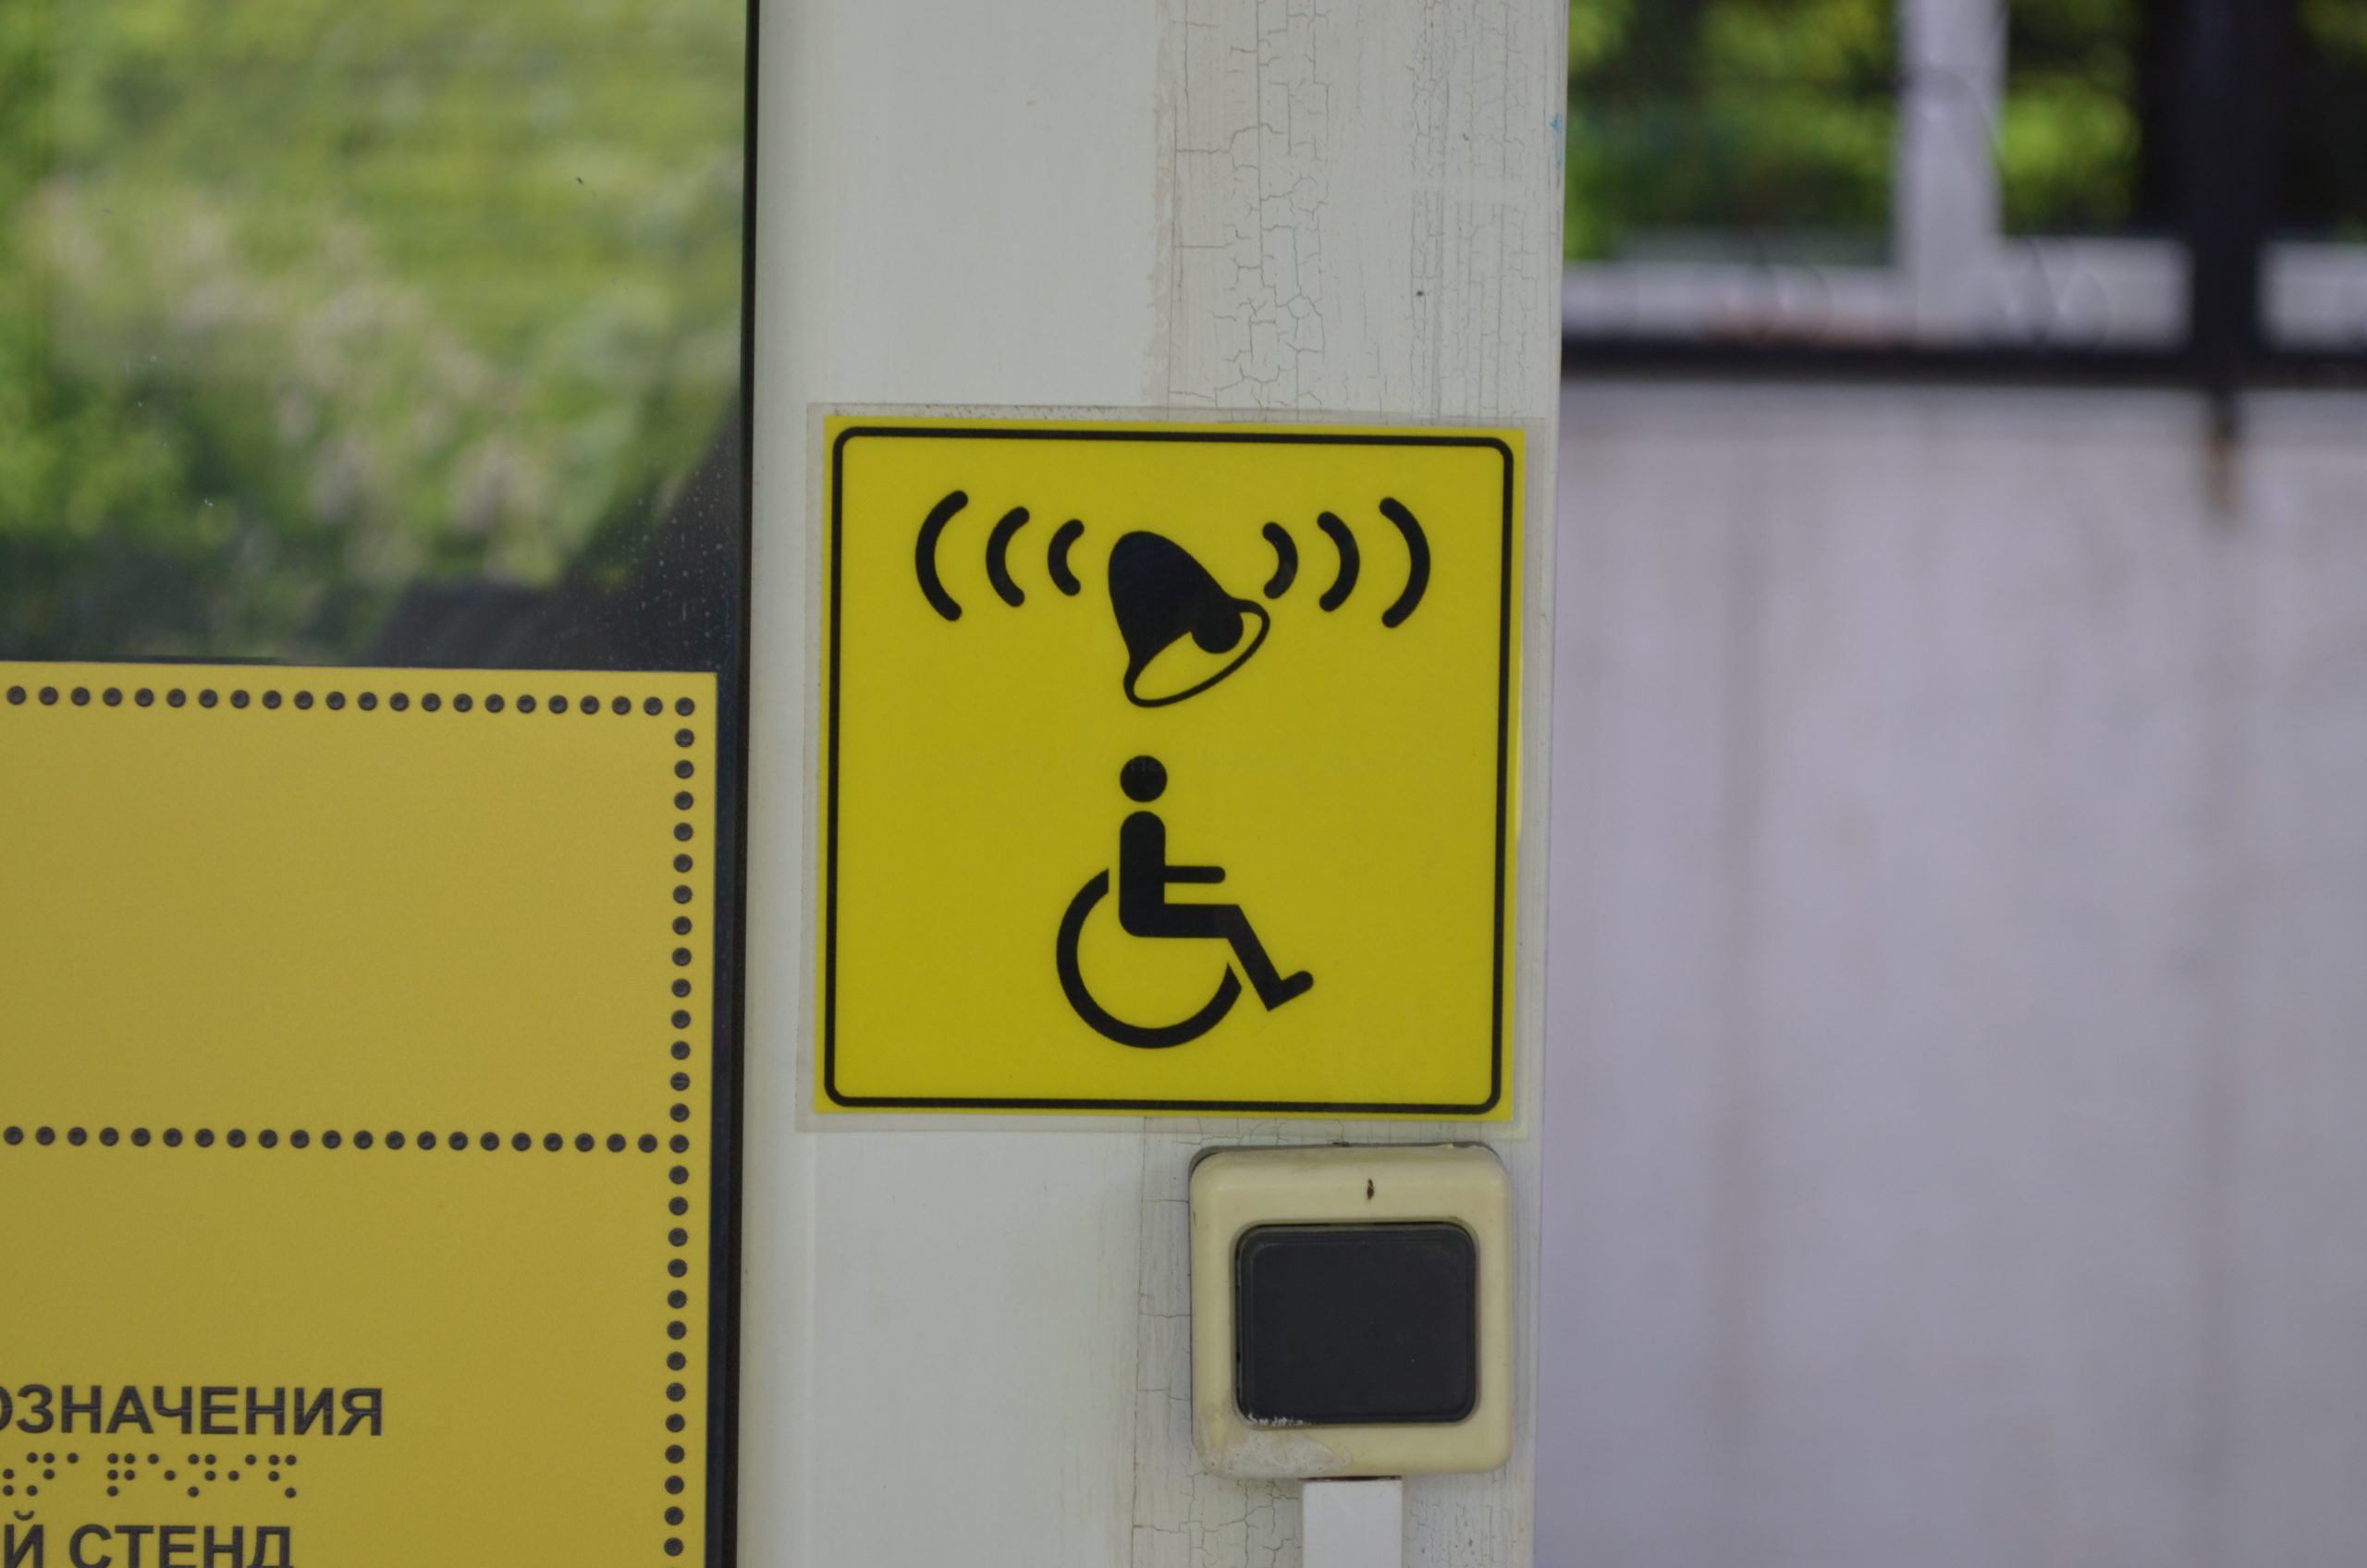 Таблички на здание для инвалидов